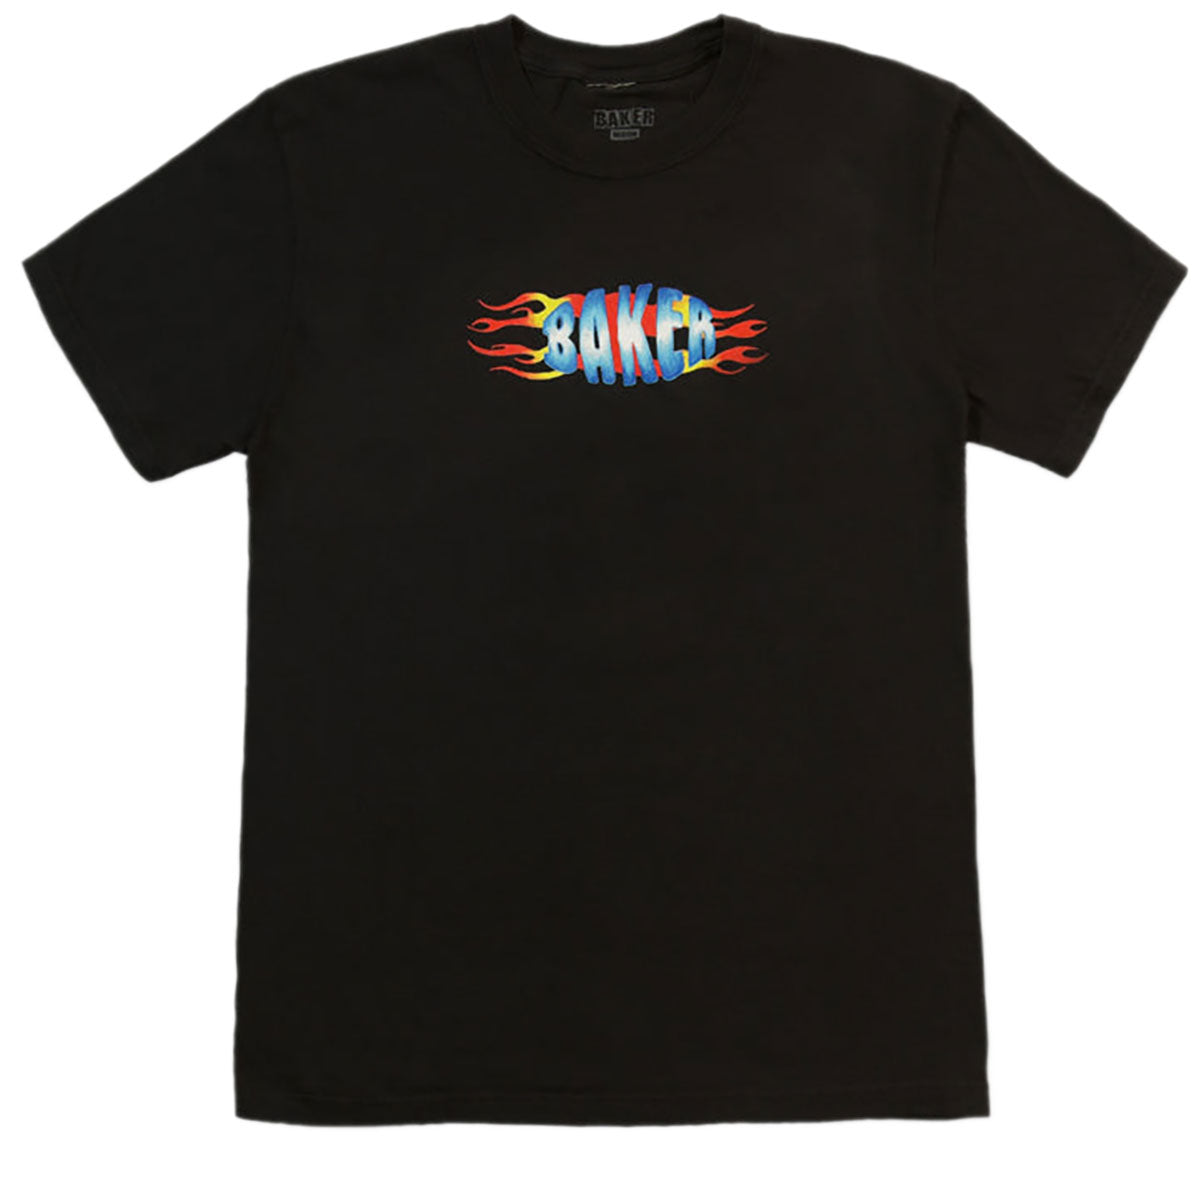 Baker Flames T-Shirt - Black image 1